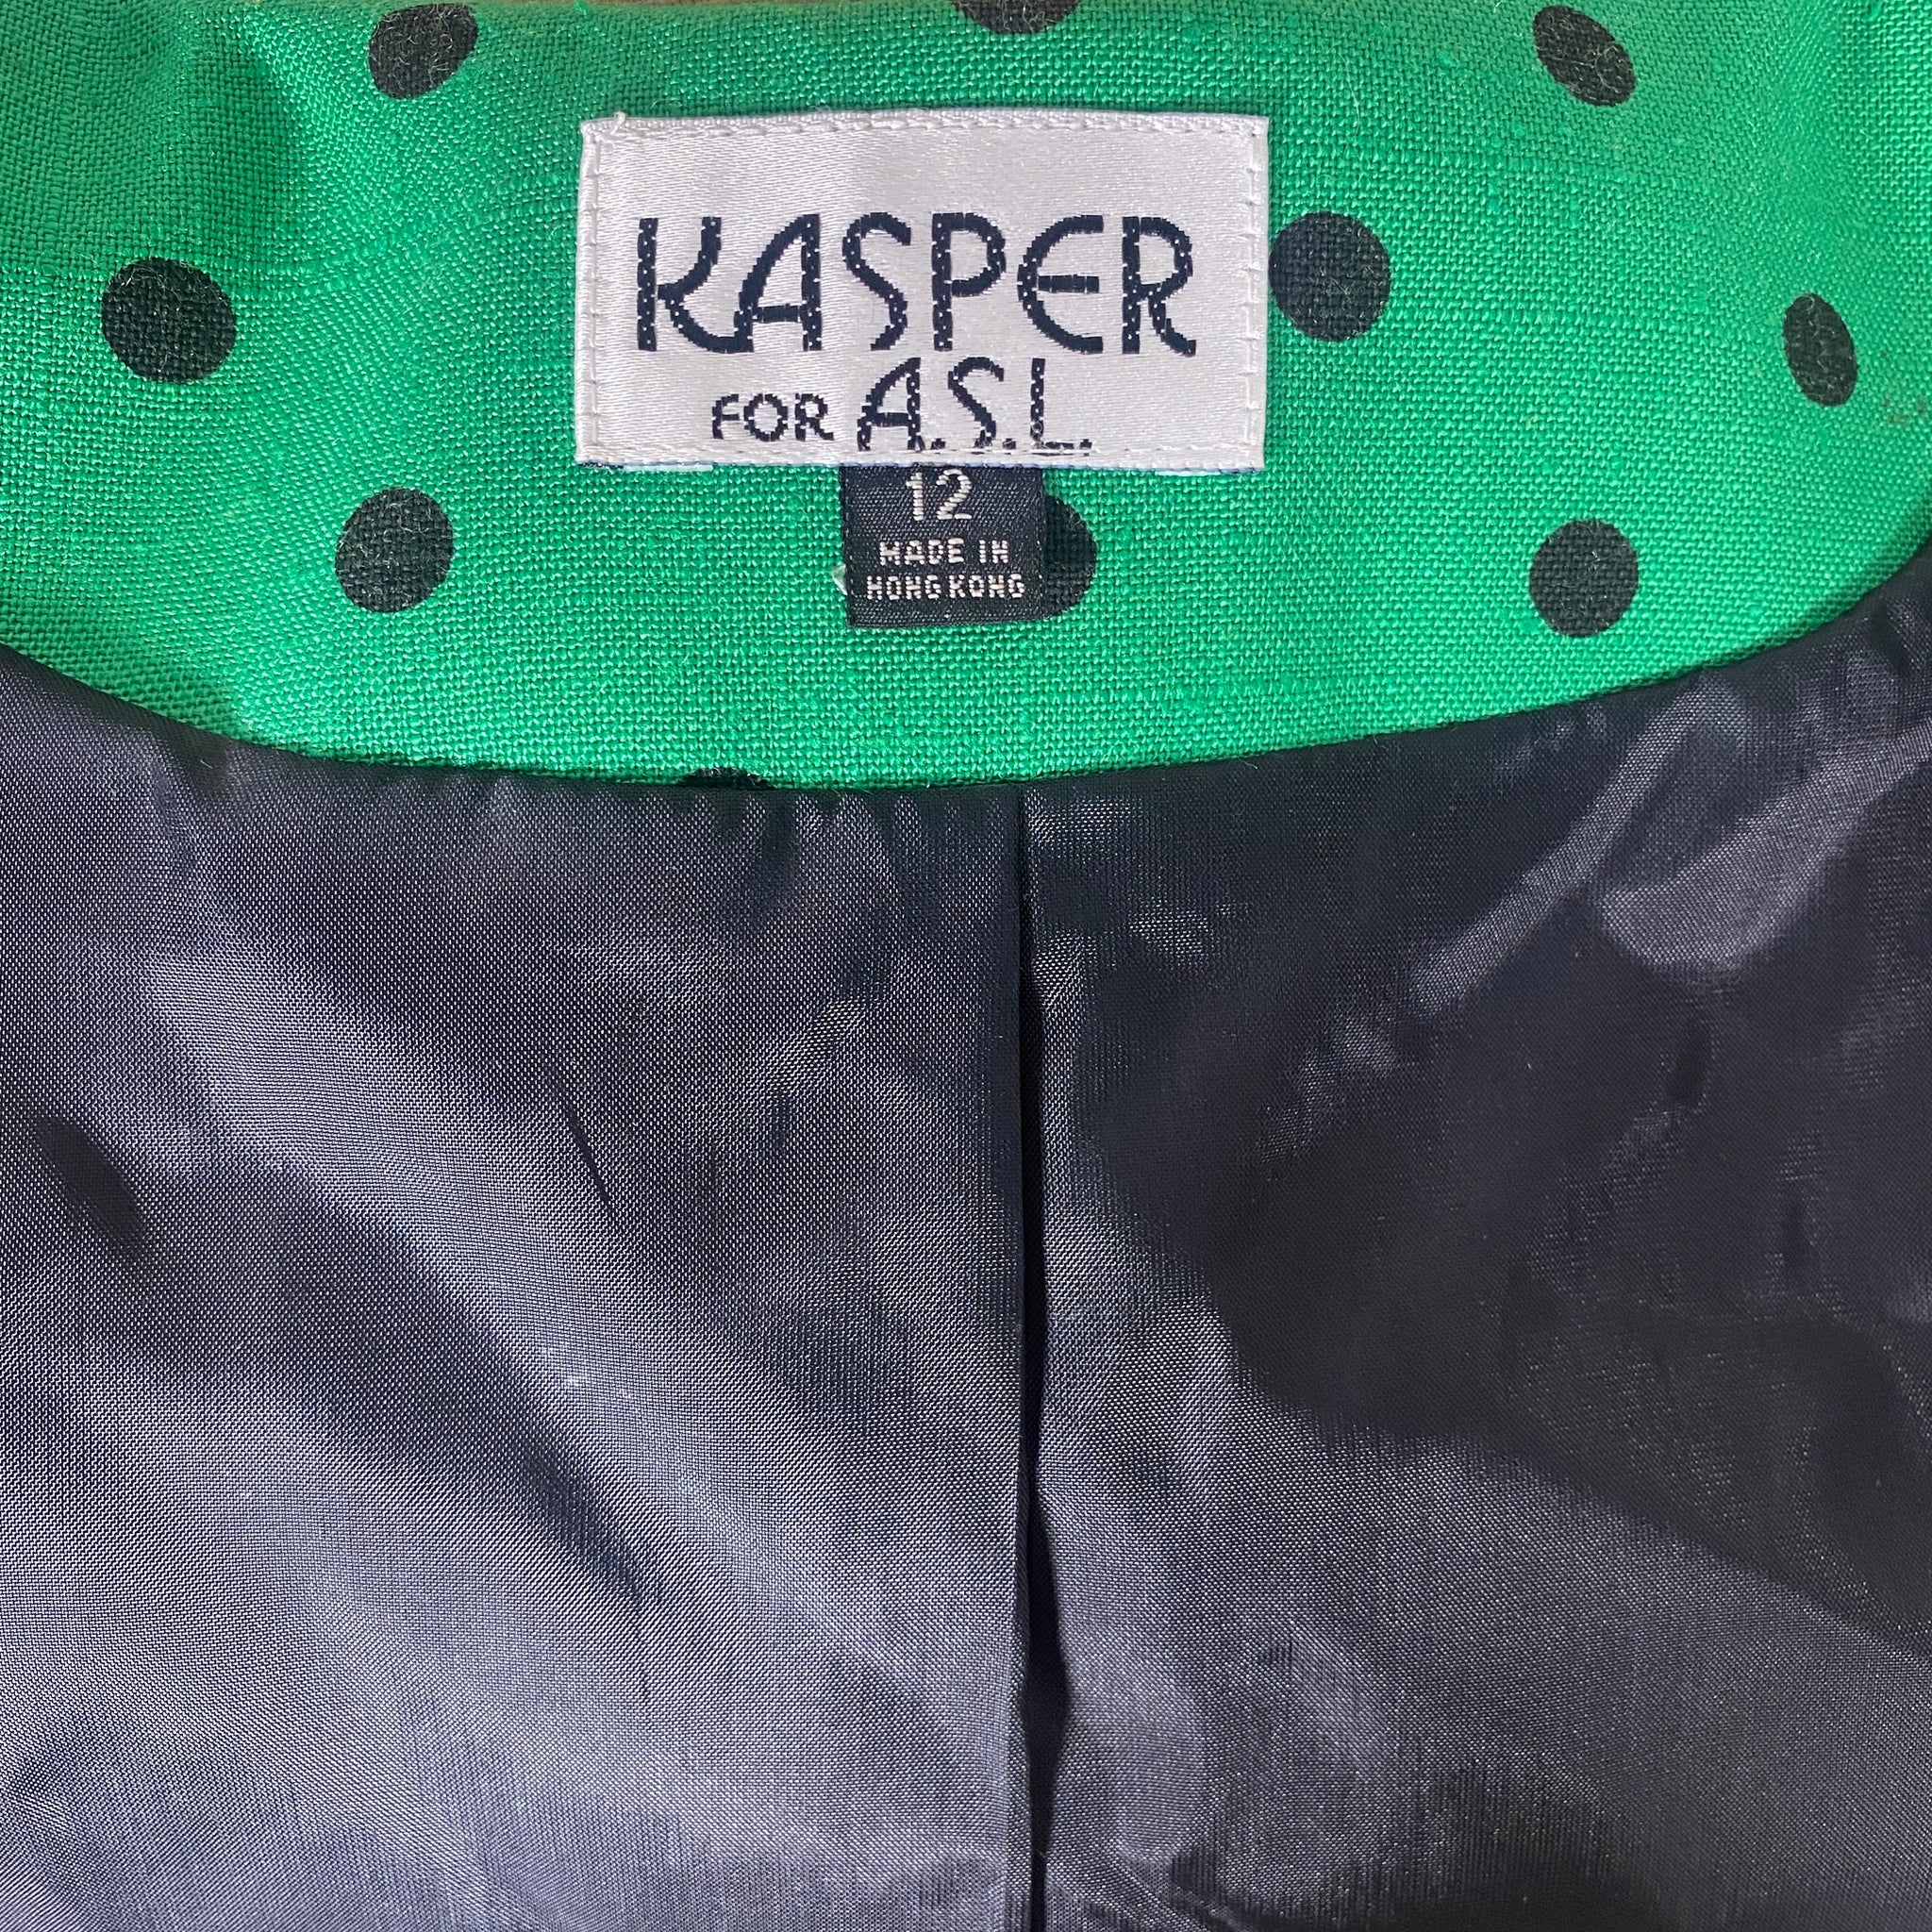 Kasper for A.S.L. Blazer top